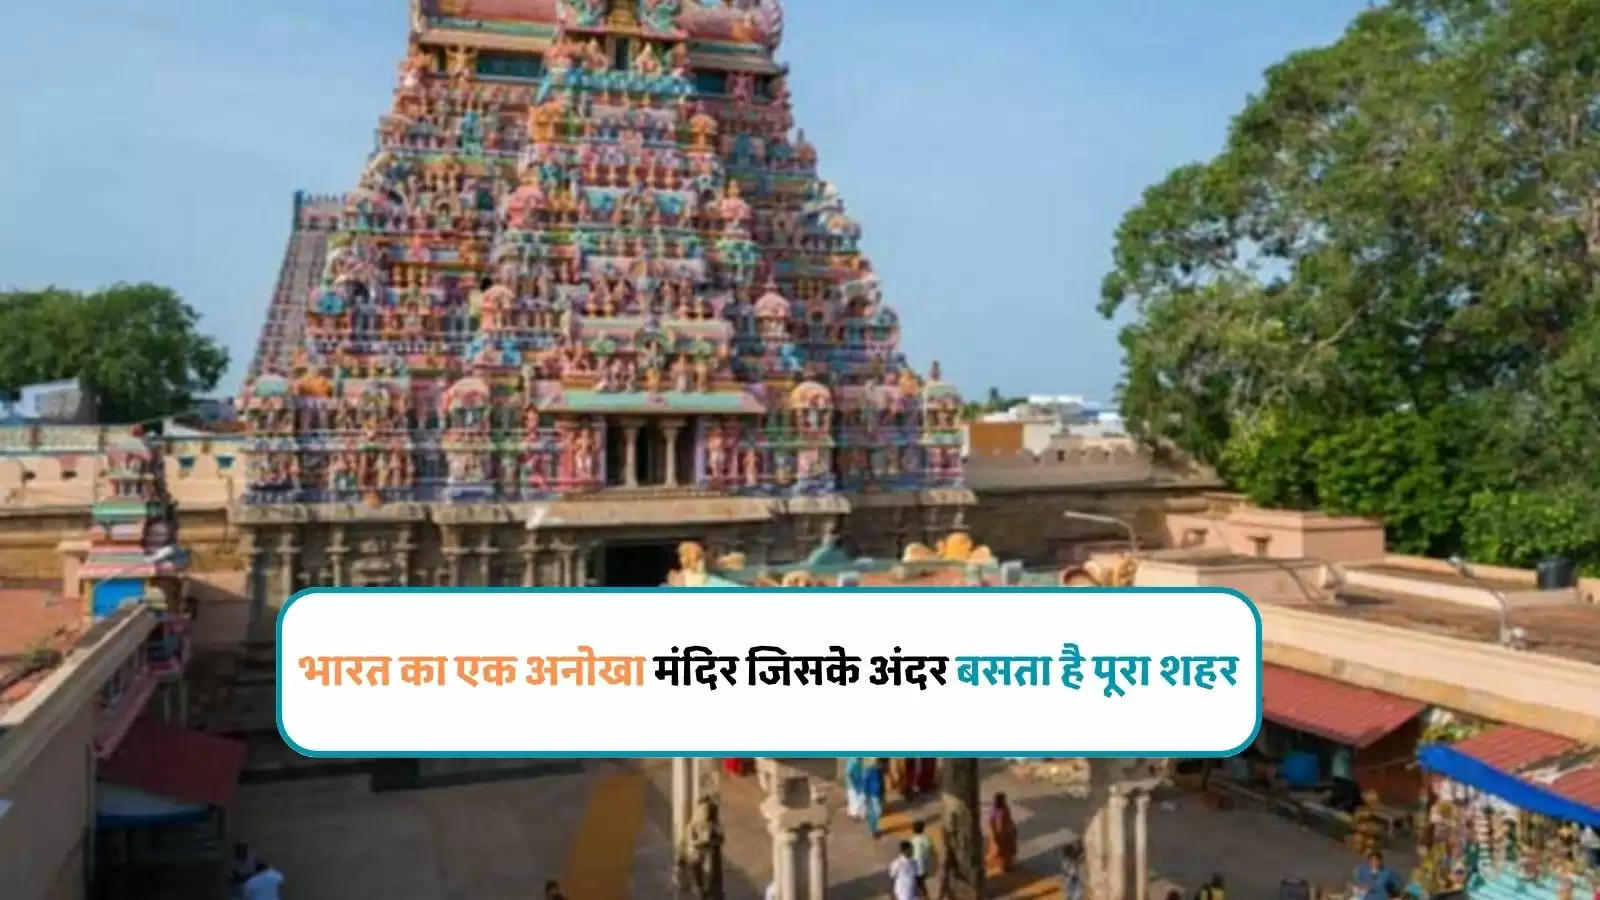 भारत का एक अनोखा मंदिर जिसके अंदर बसता है पूरा शहर,